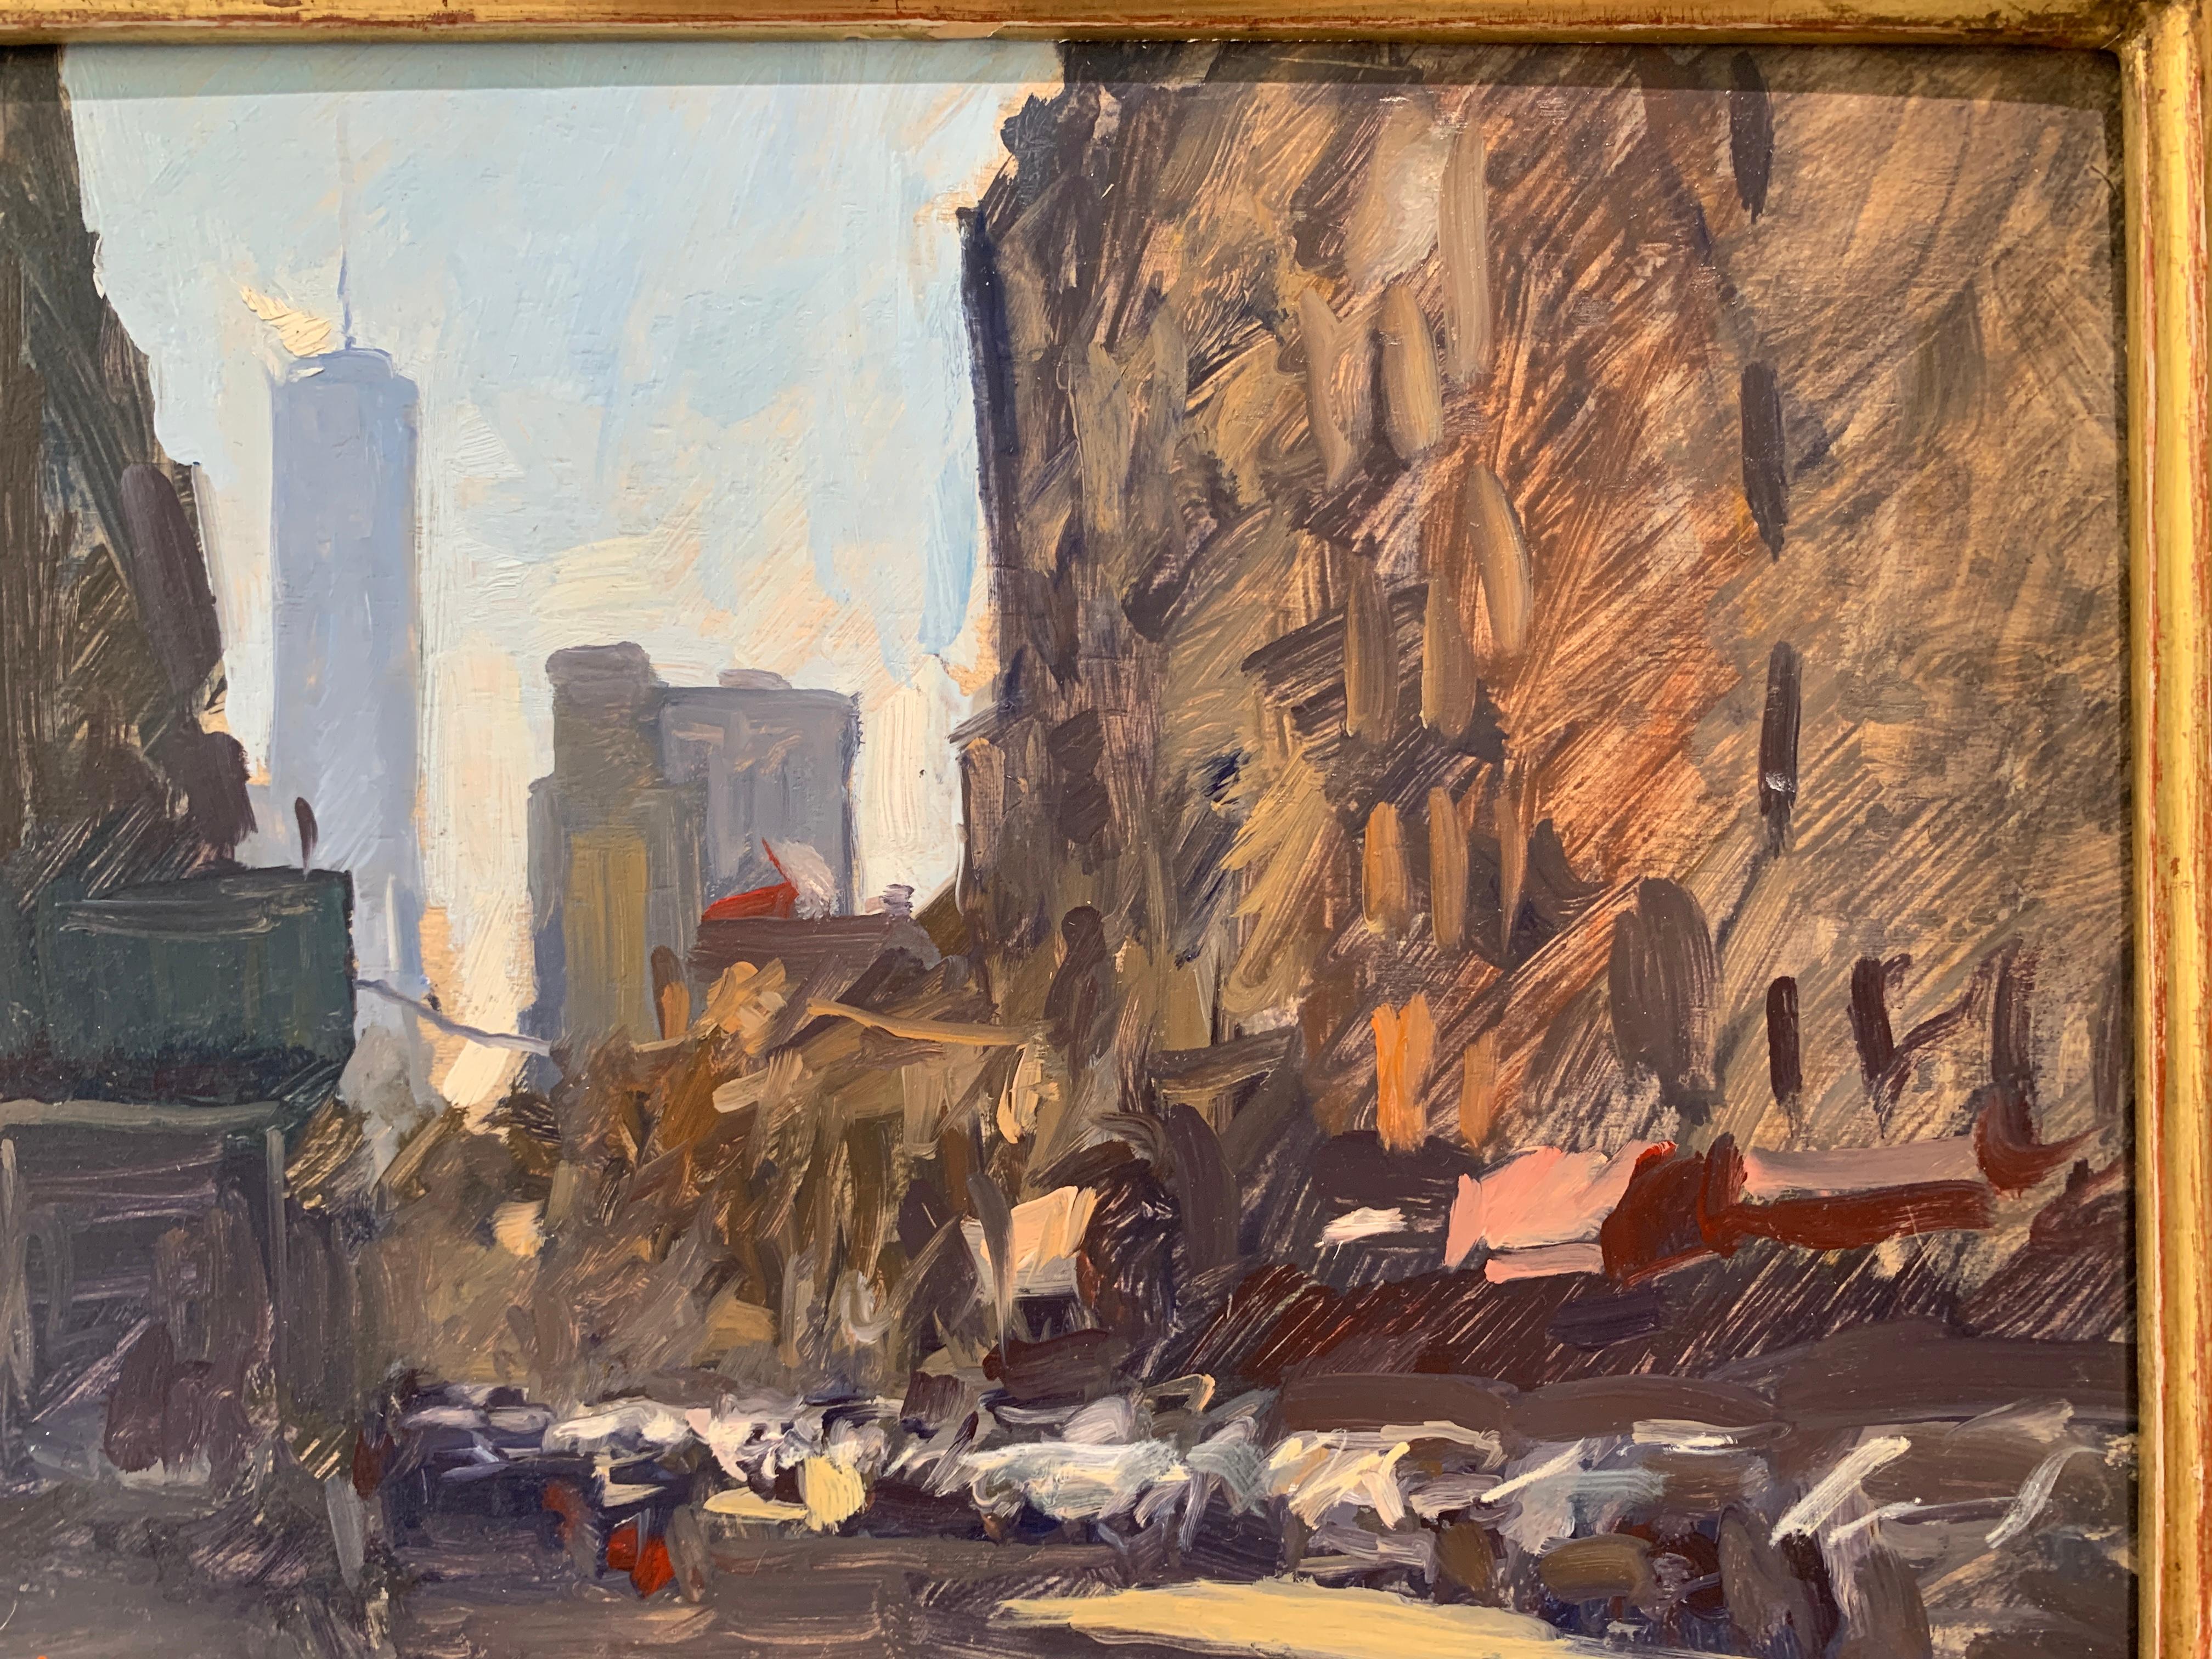 Ein Ölgemälde, gemalt en plein air in SOHO, NYC. Das Gemälde zeigt eine von Autos gesäumte Straße. In der Ferne ist der Freedom Tower zu sehen. Das Gemälde ist in einem handgefertigten italienischen Rahmen, schwarz mit Goldverzierung,